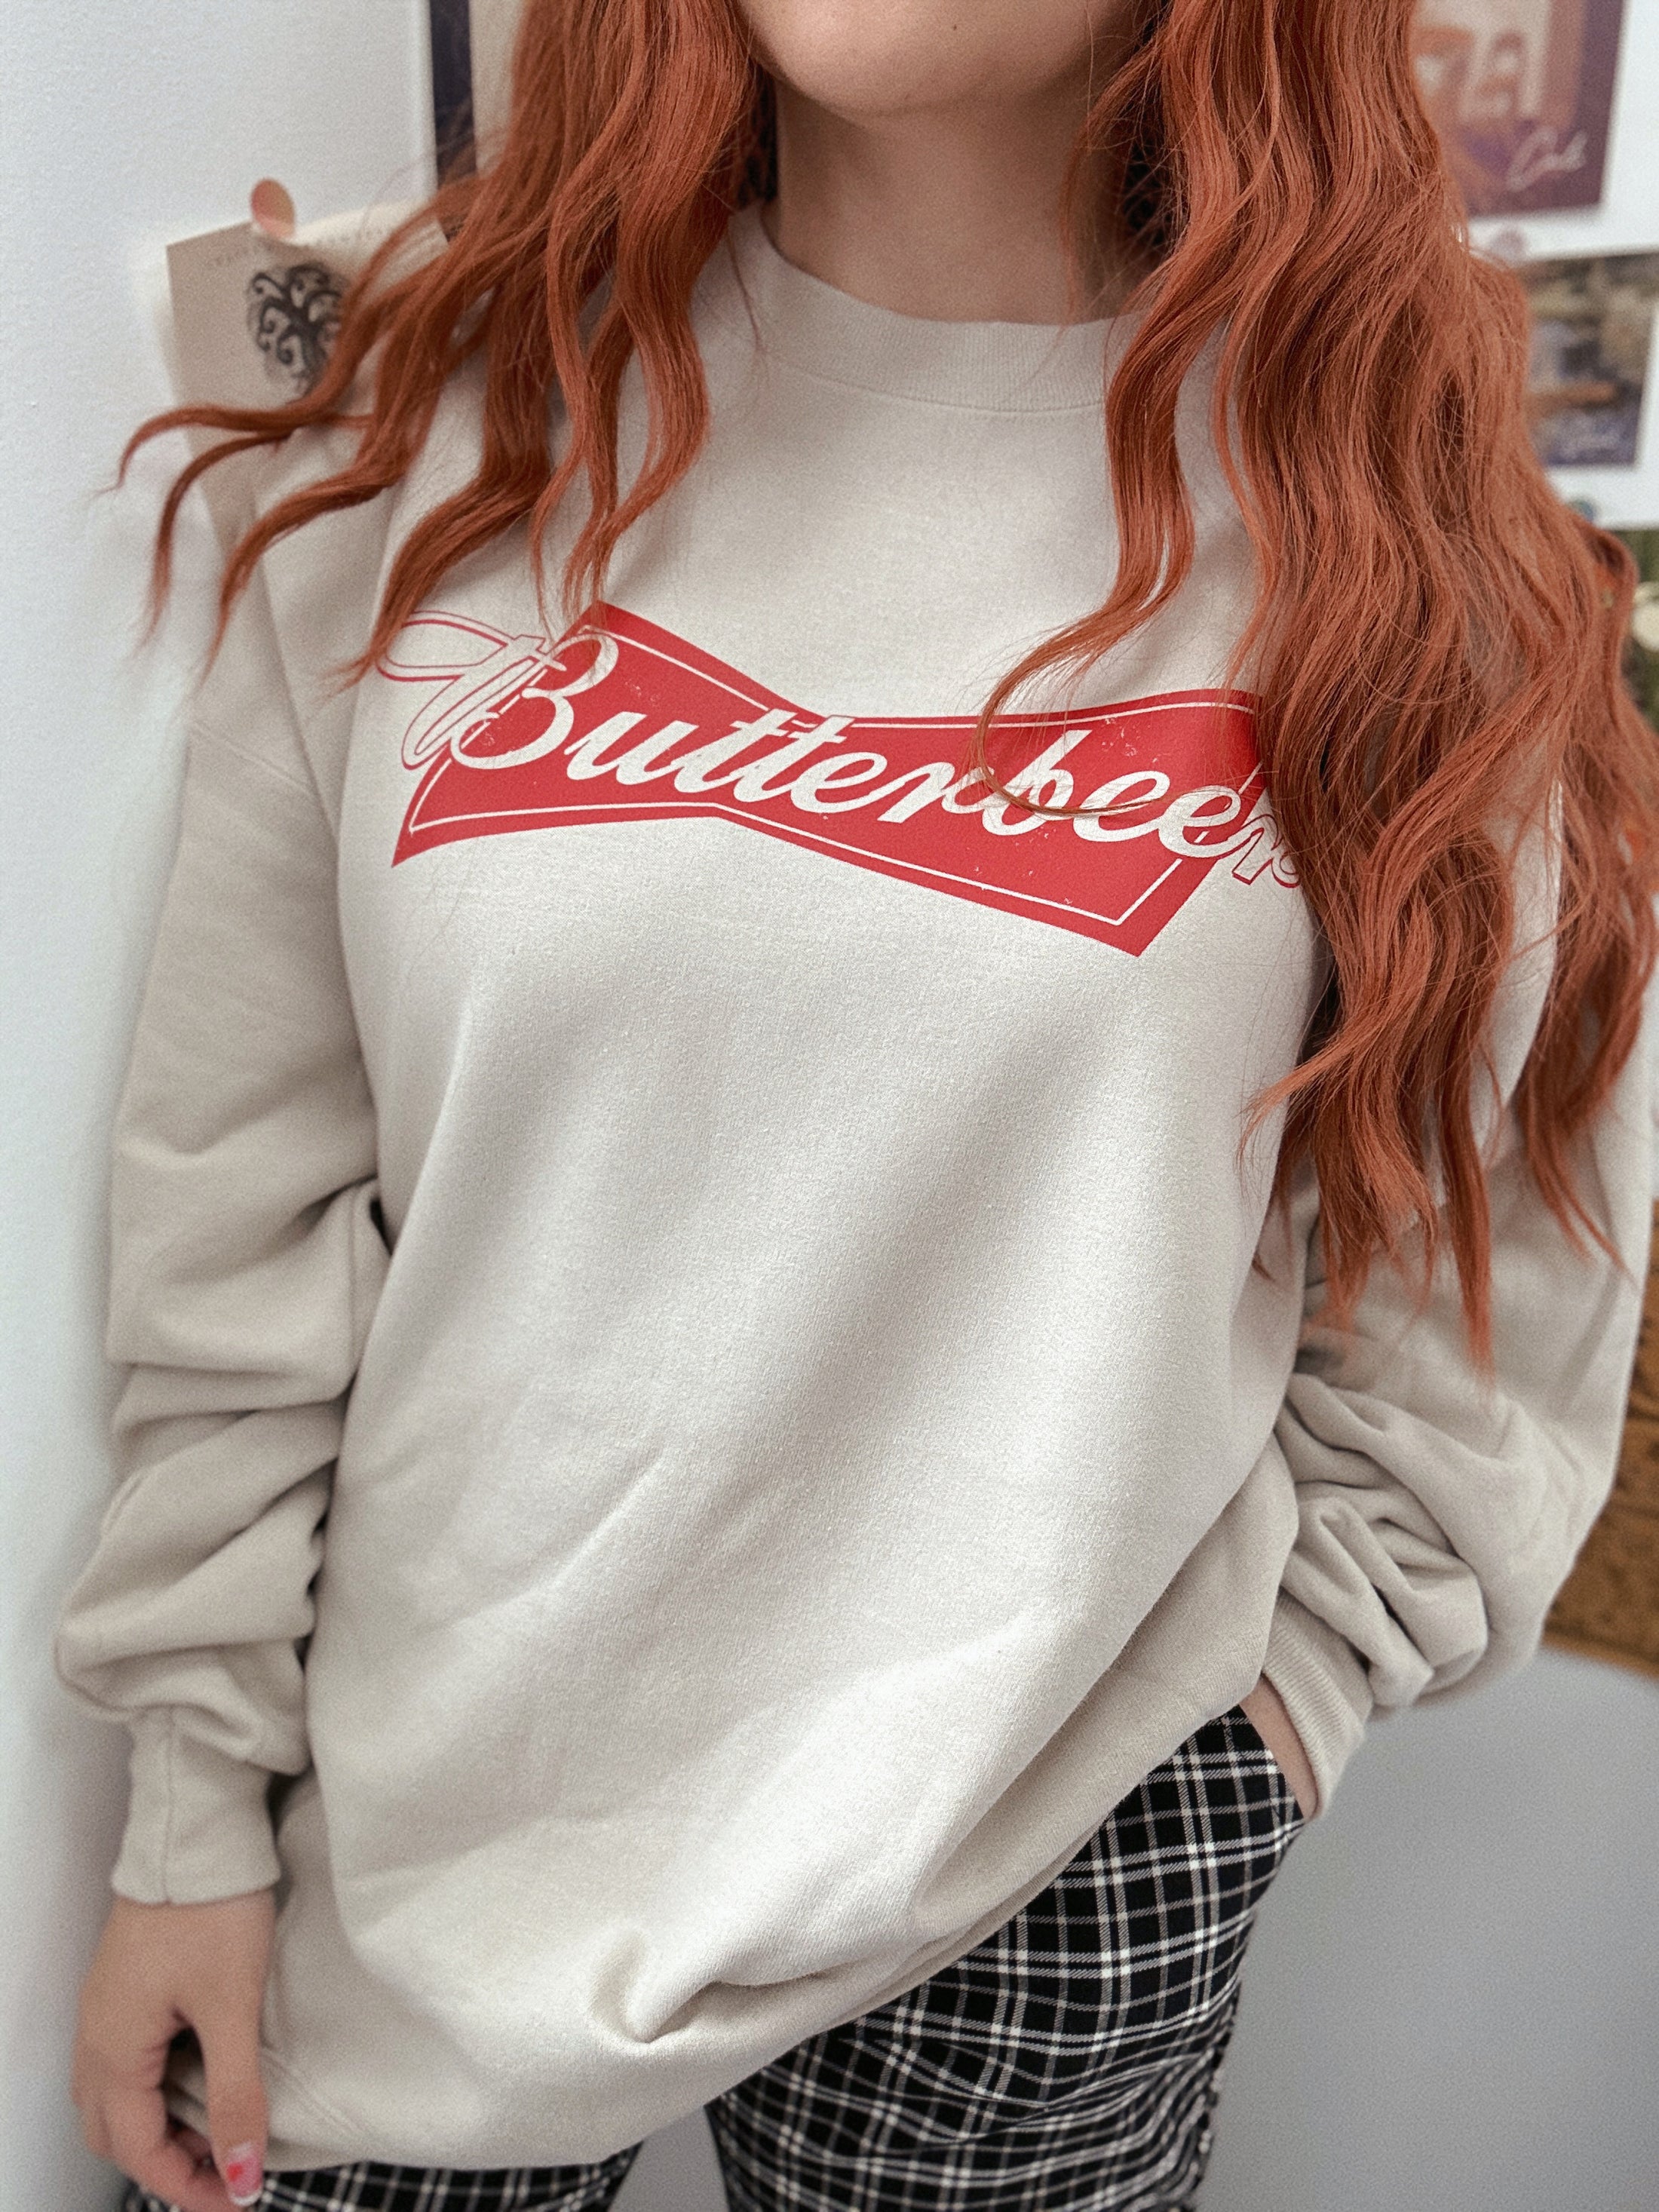 Butterbeer Graphic Sweatshirt